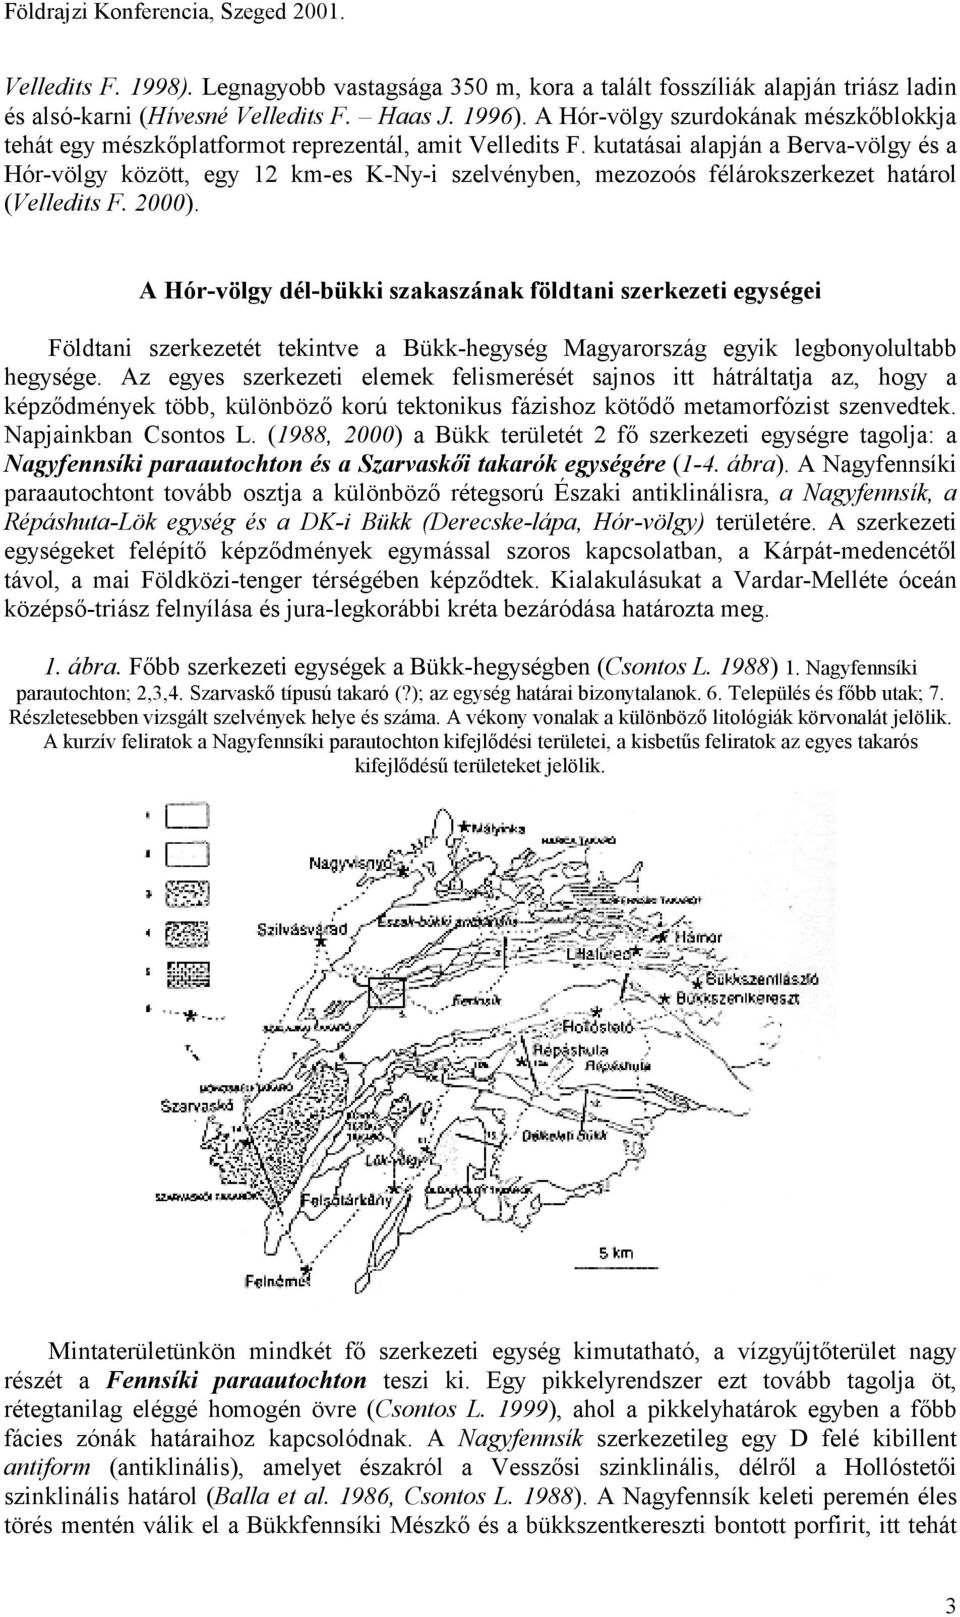 kutatásai alapján a Berva-völgy és a Hór-völgy között, egy 12 km-es K-Ny-i szelvényben, mezozoós félárokszerkezet határol (Velledits F. 2000).